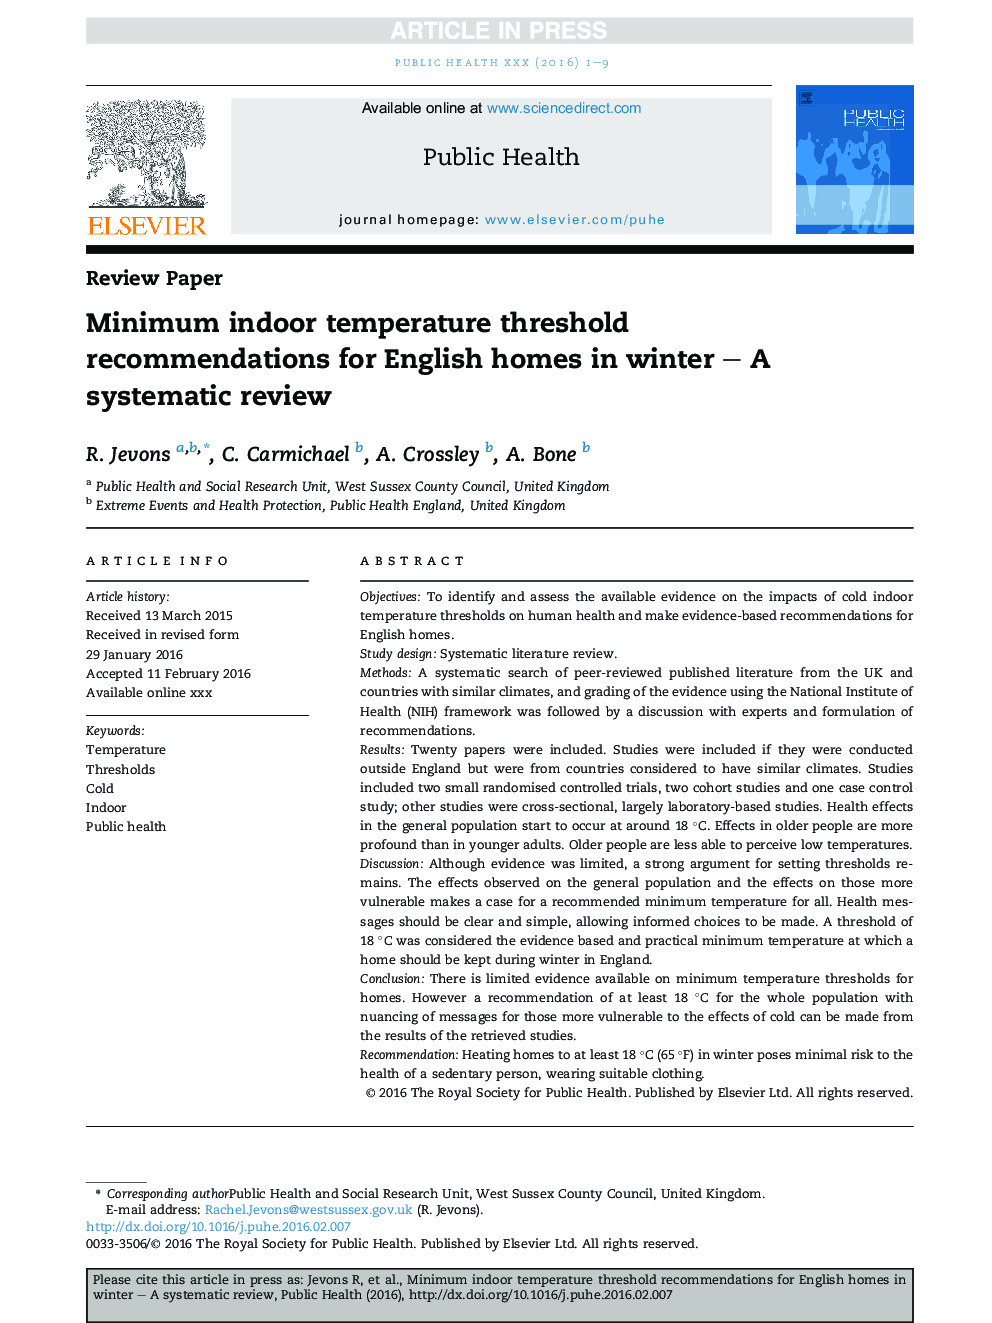 حداقل توصیه های آستانه دمای داخلی برای خانه های انگلیسی در زمستان - بررسی سیستماتیک 